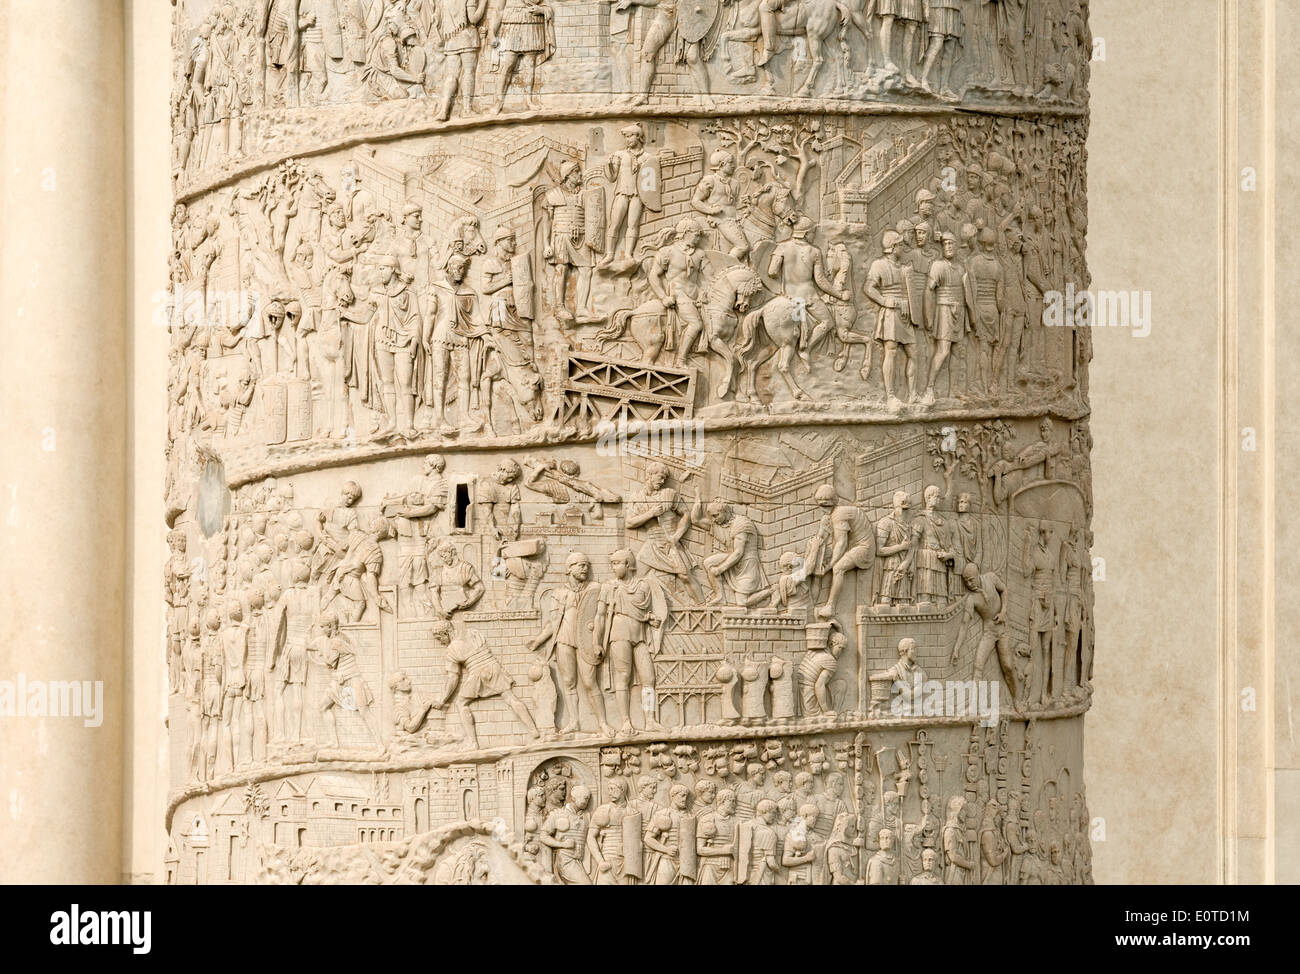 Nahaufnahme von der detaillierten Carven auf Trajans Spalte, 2. Jh. n. Chr., AD 113 abgeschlossen, das Forum, Rom Italien Stockfoto